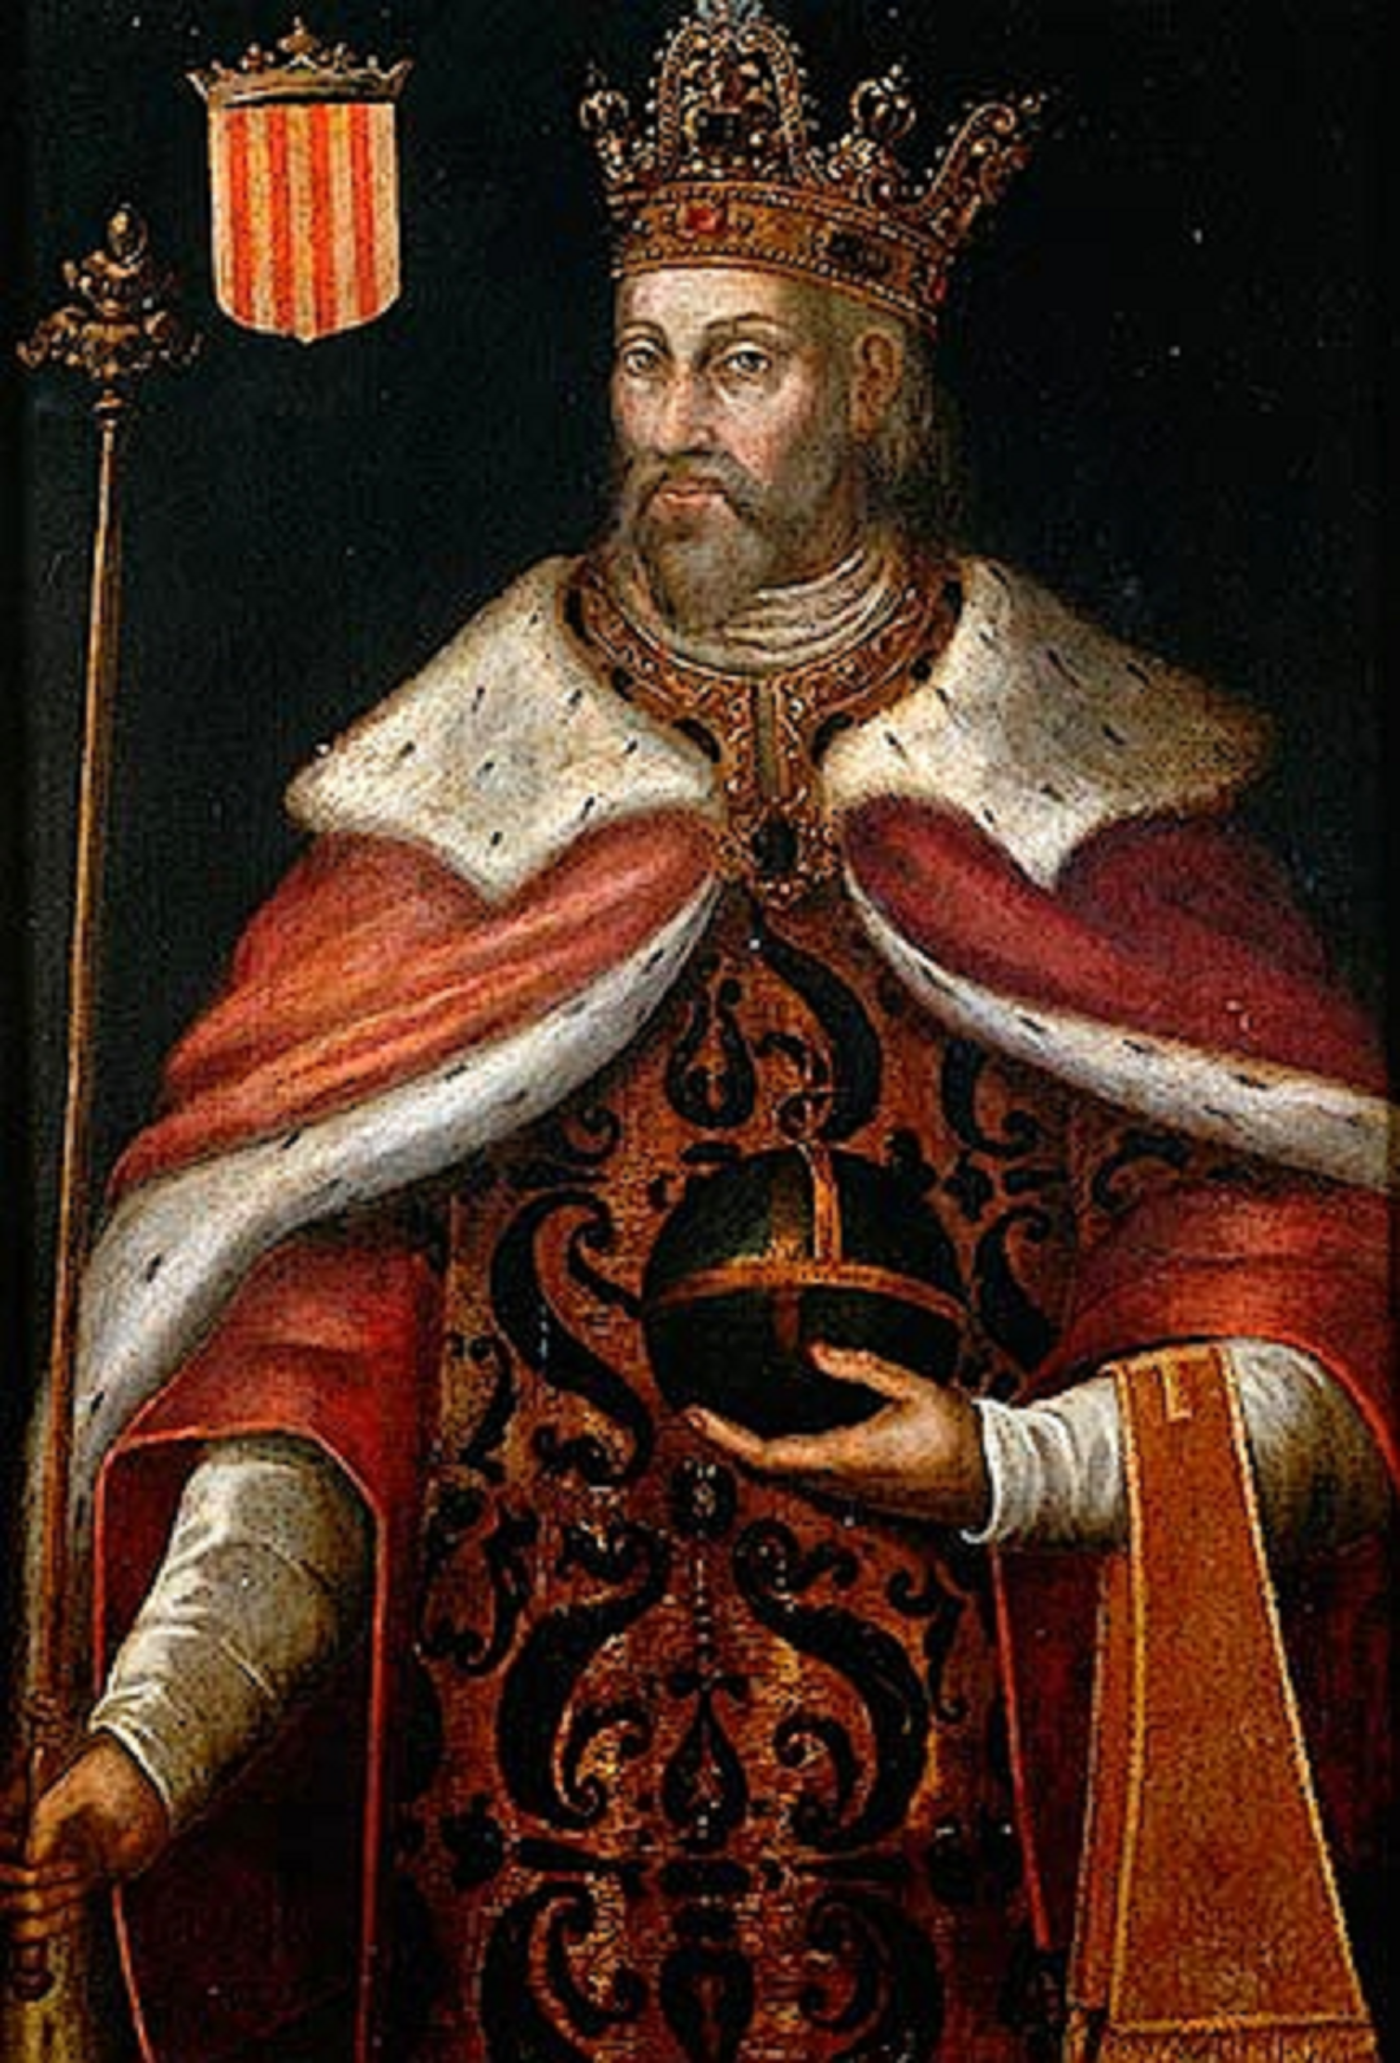 Muere Pedro el Grande, el conde-rey almogávar